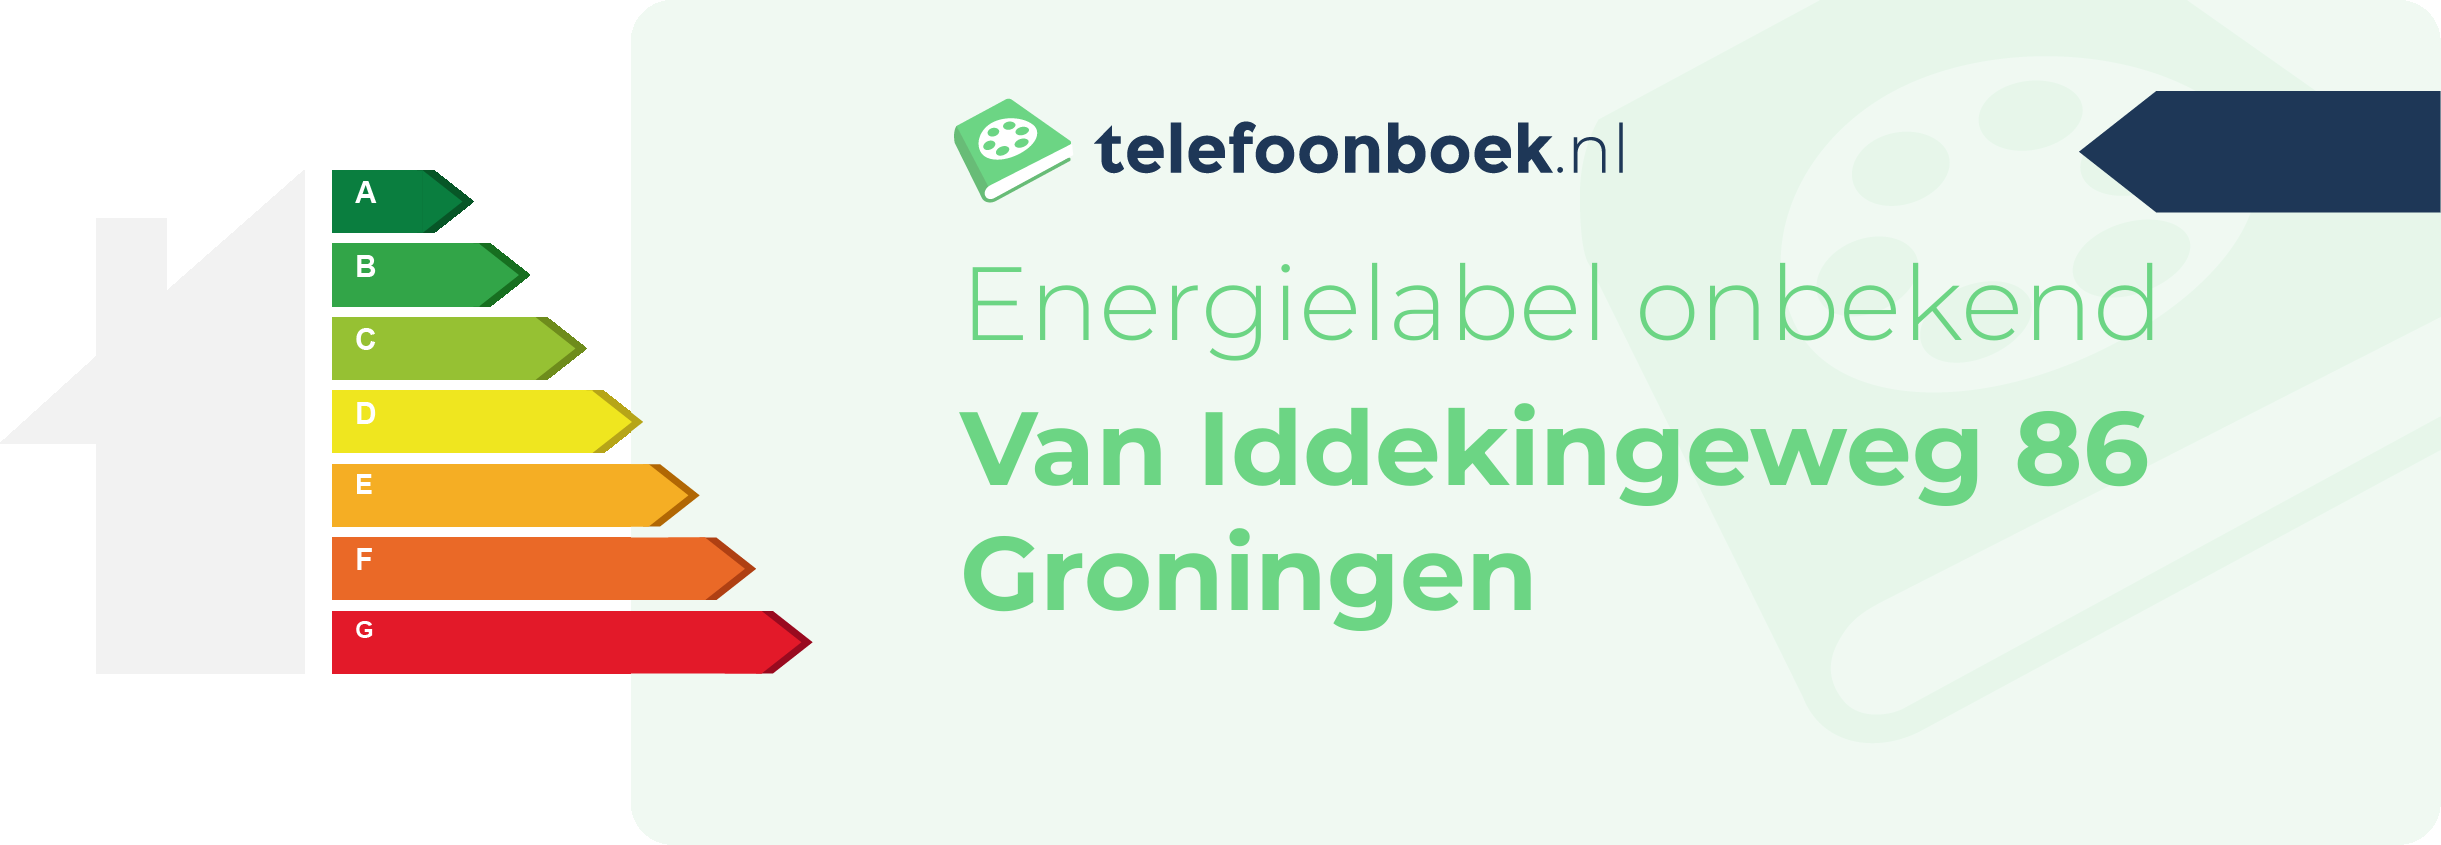 Energielabel Van Iddekingeweg 86 Groningen